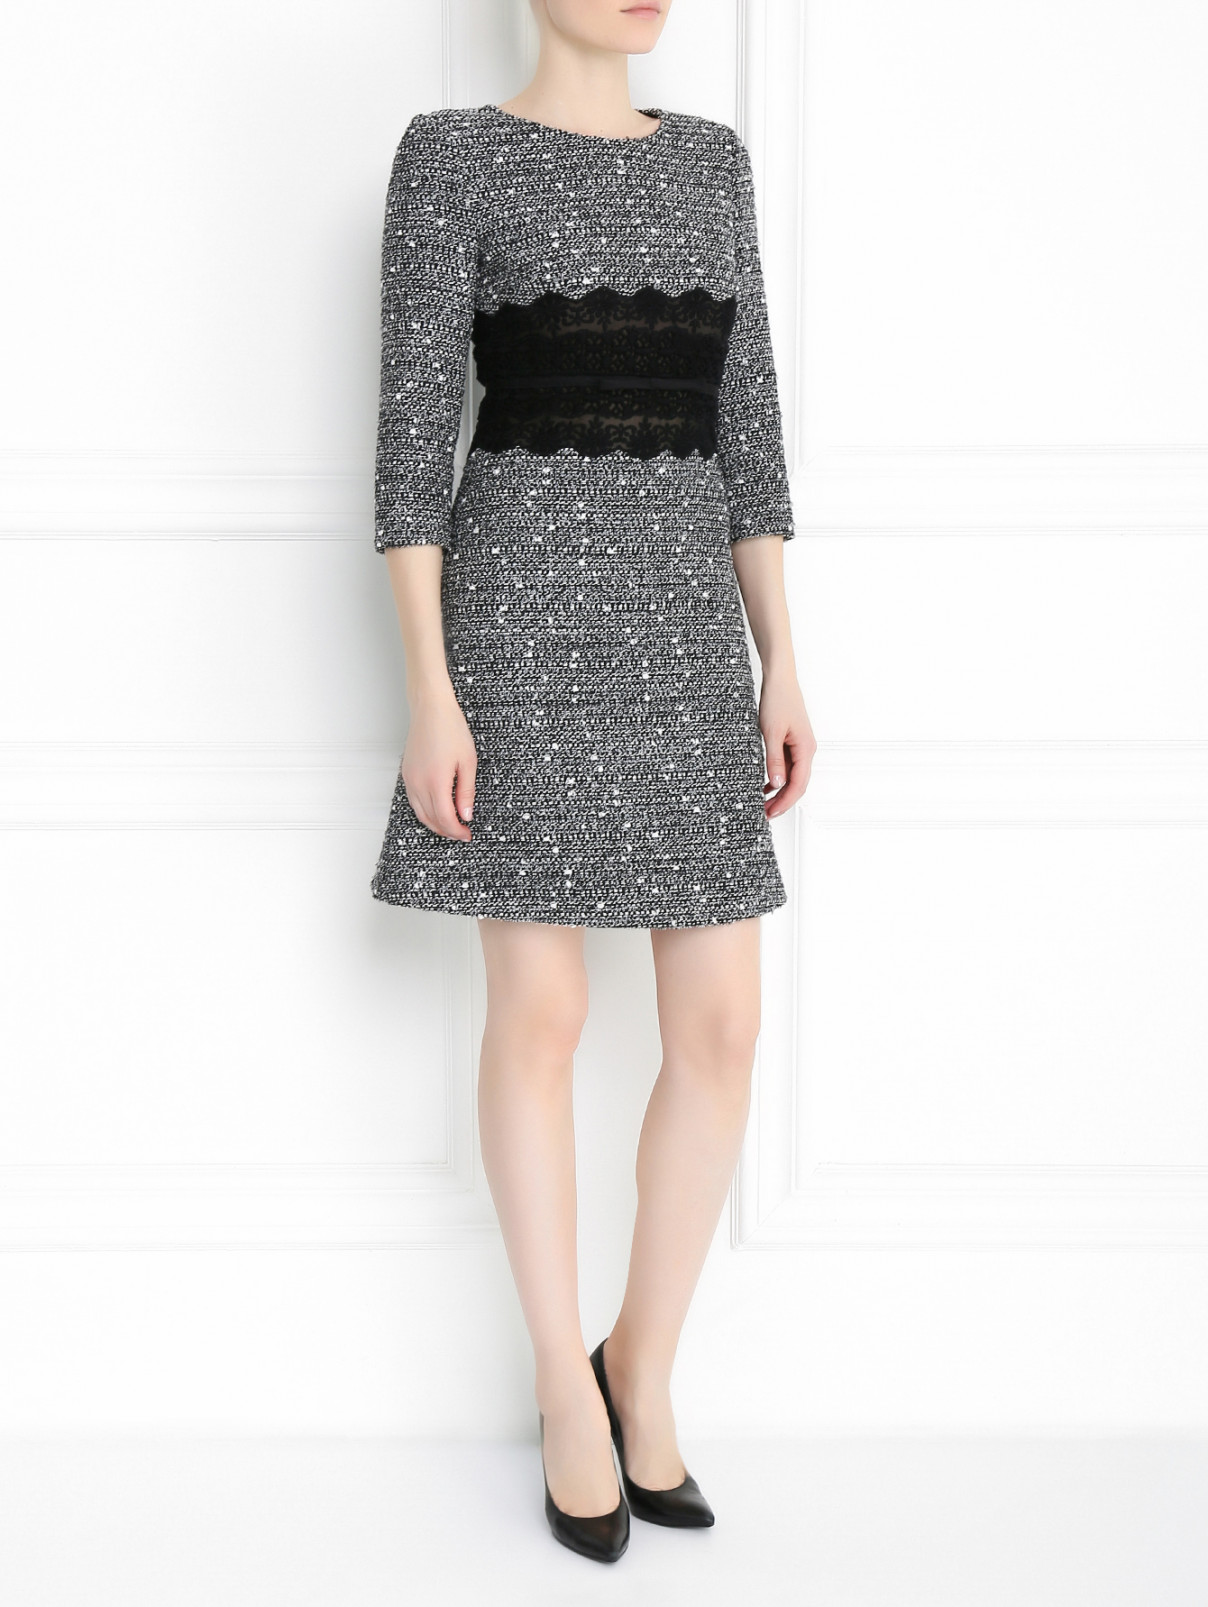 Платье из шерсти с отделкой из кружева Giambattista Valli  –  Модель Общий вид  – Цвет:  Черный